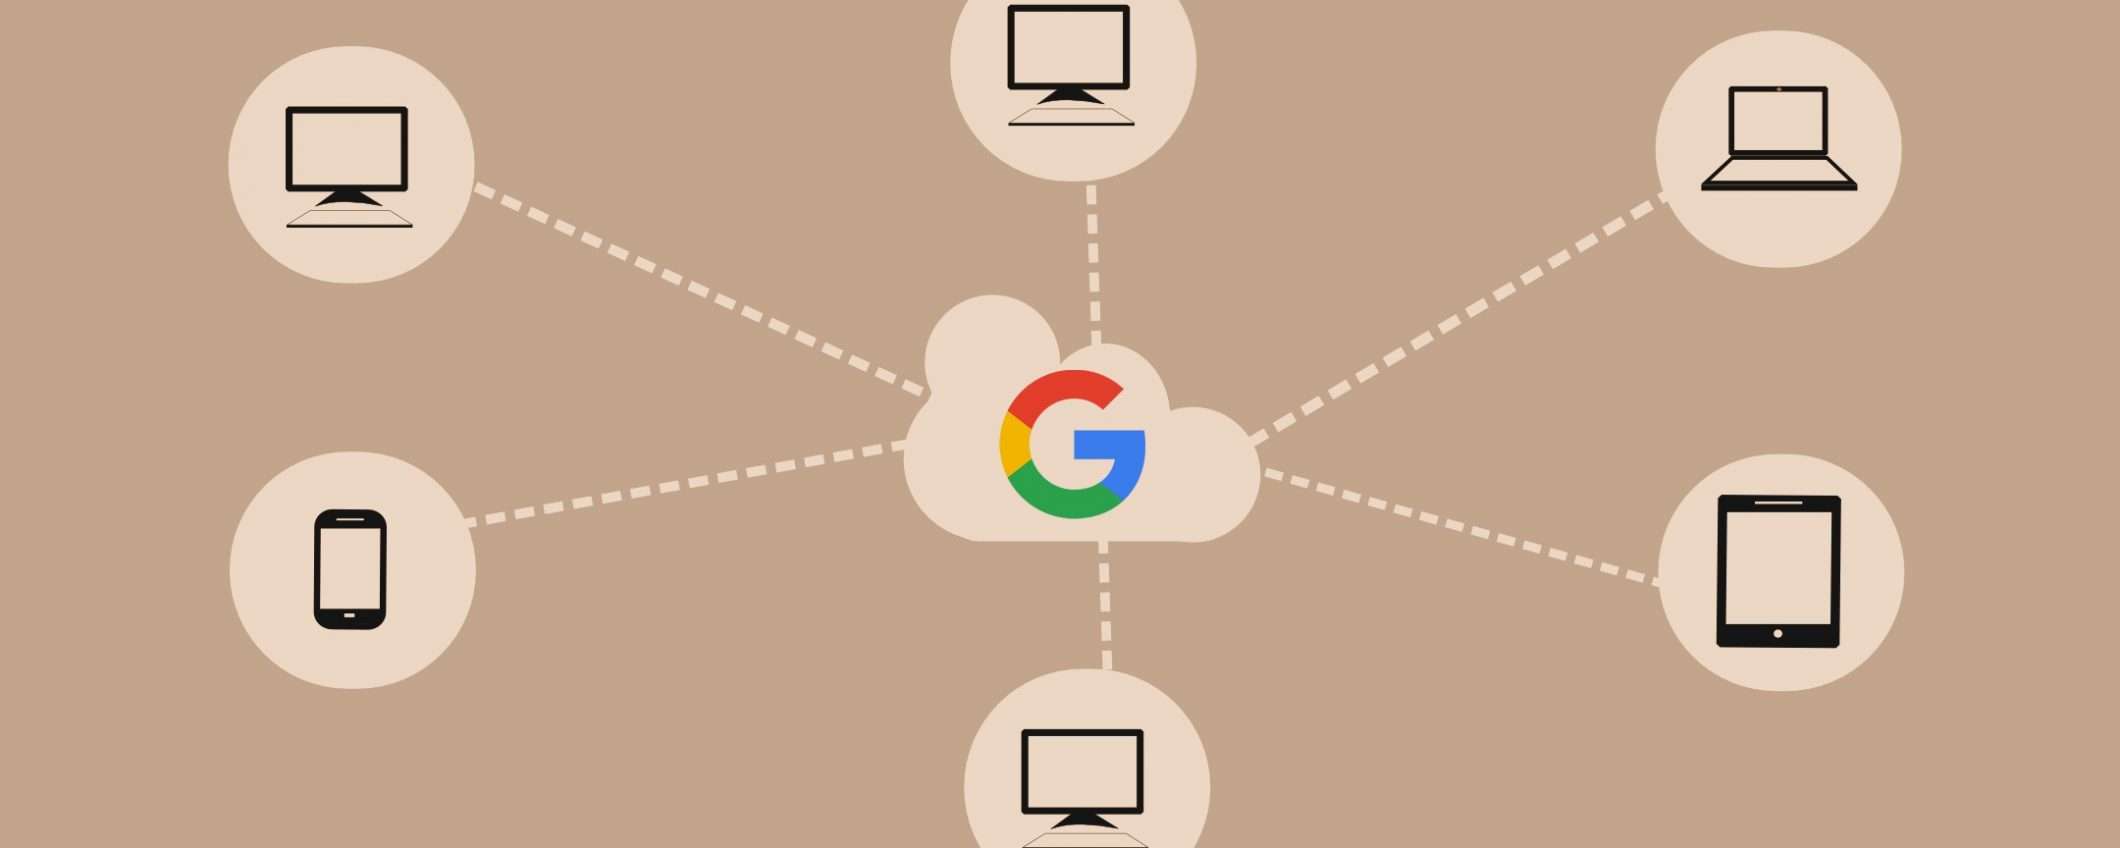 TIM, Intesa Sanpaolo e Google: accordo sul cloud